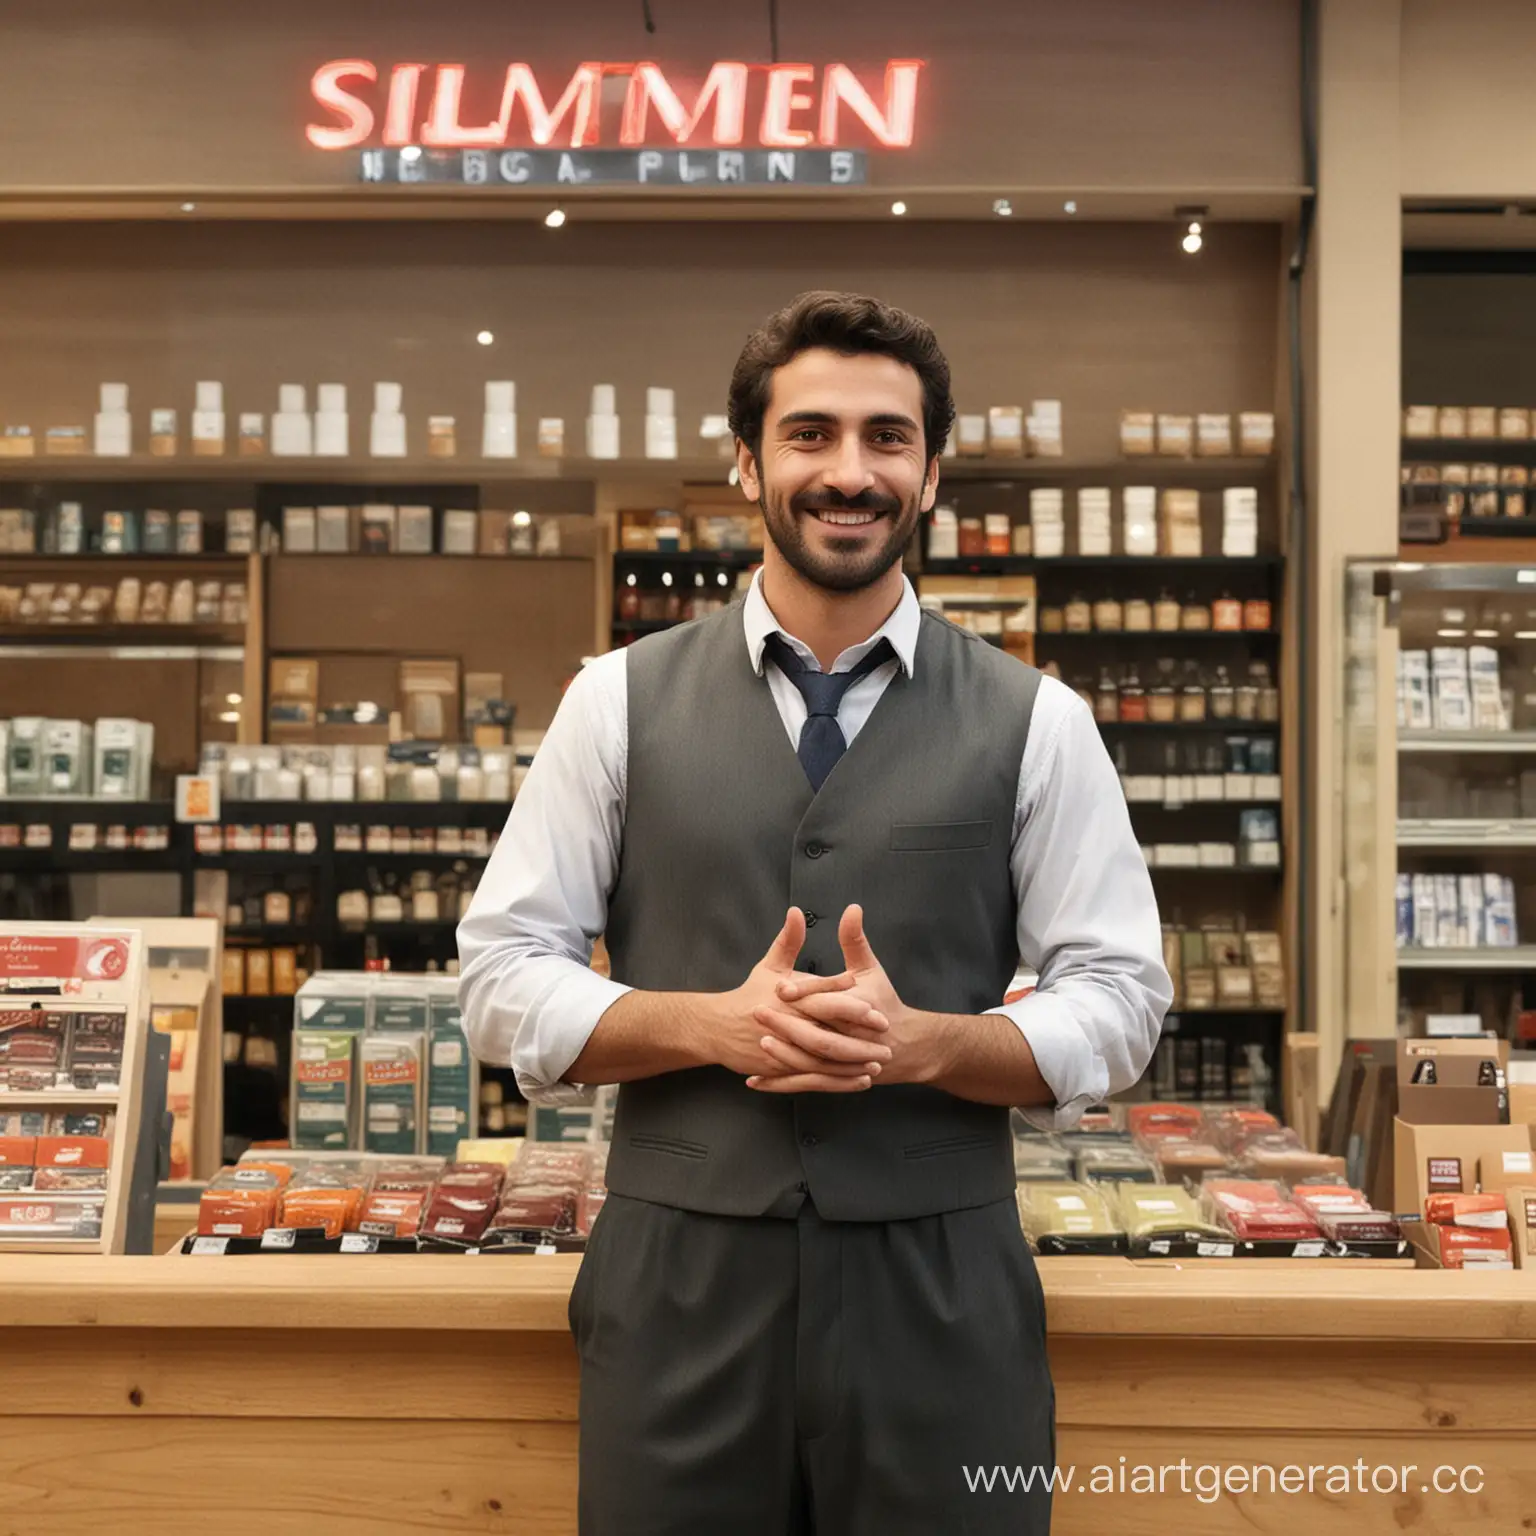 Продавец стоит на фоне магазина без вывески. Он улыбается и показывает класс двумя руками